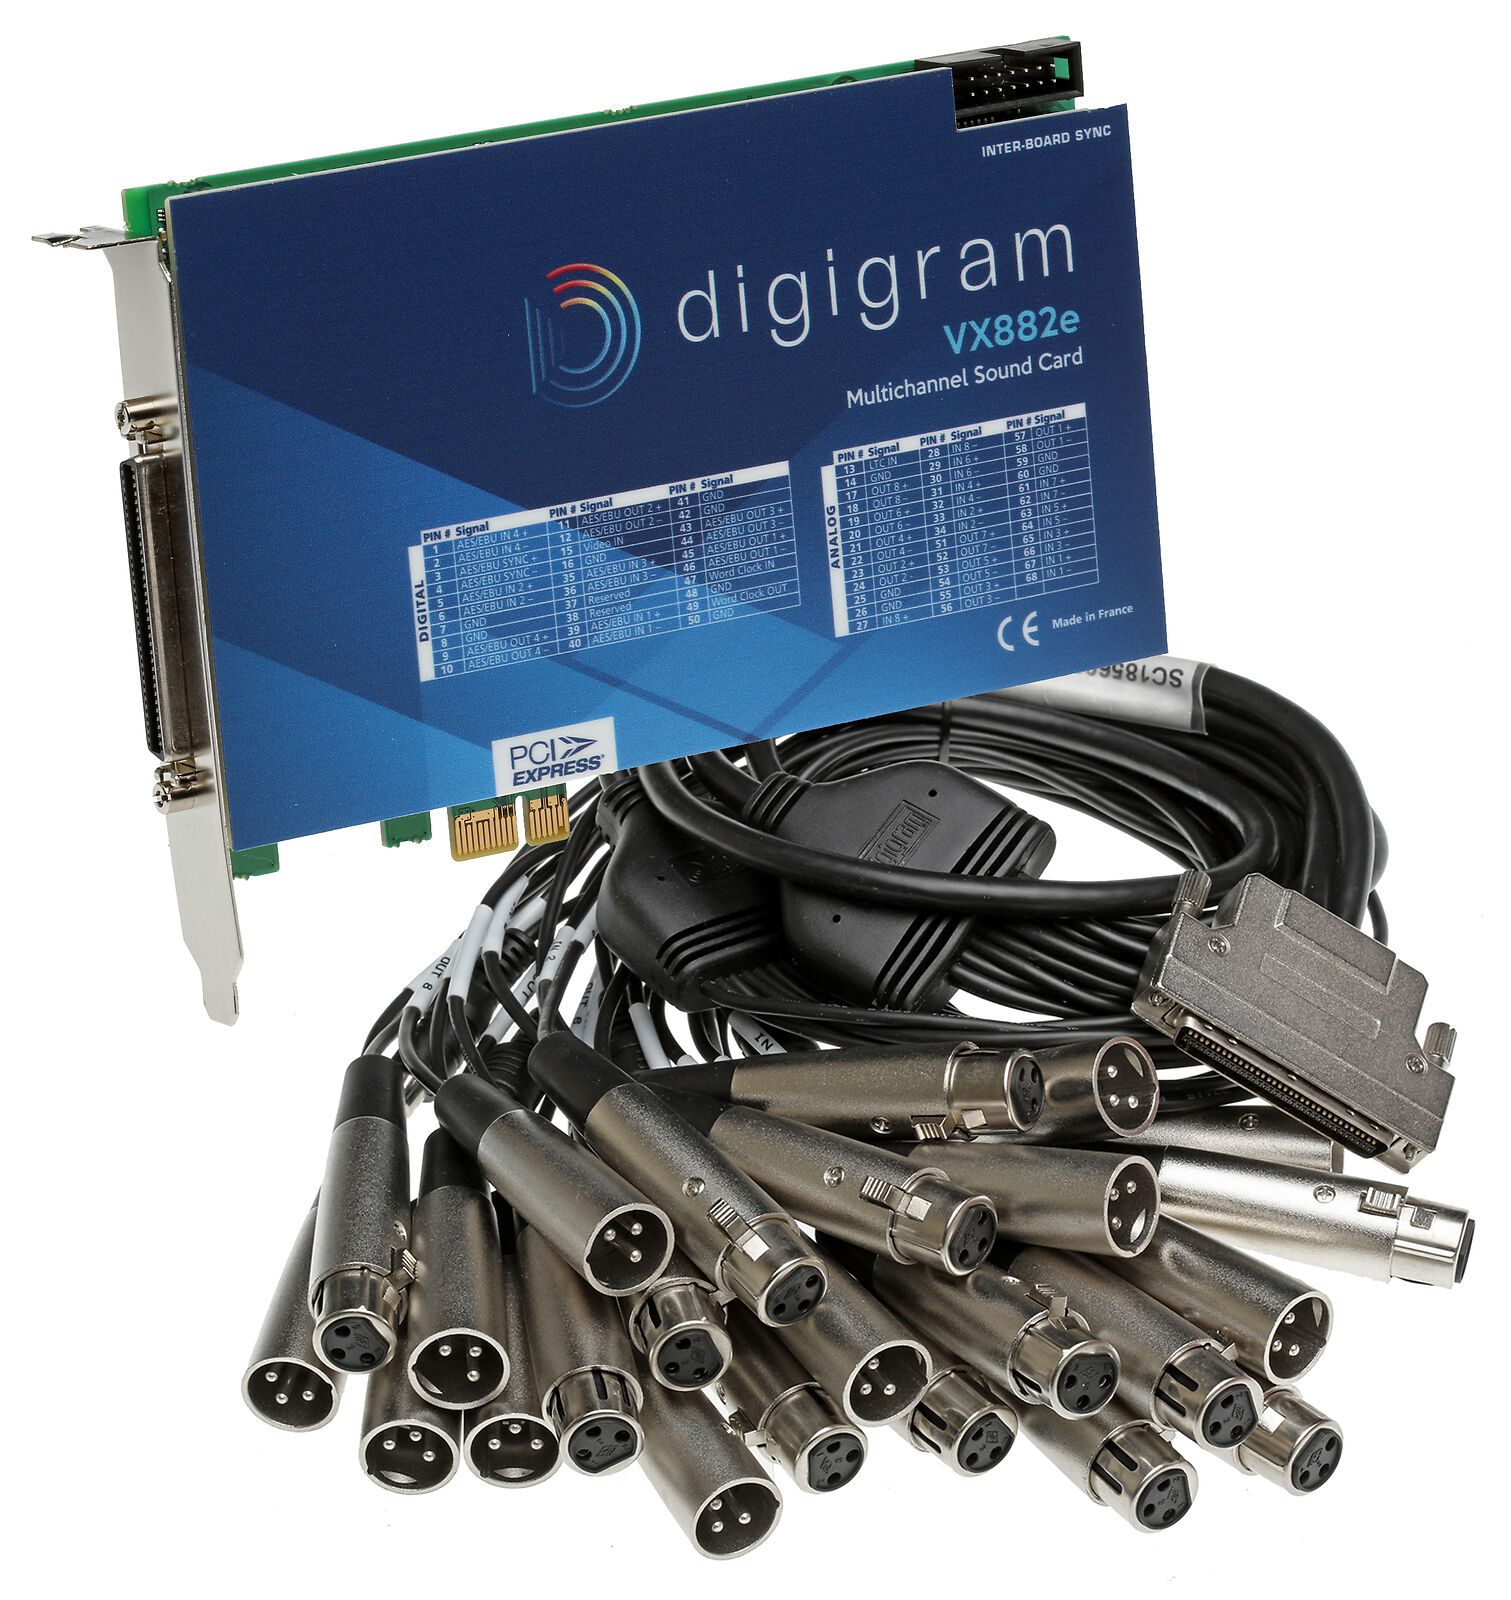 Digigram VX882e 8 Channel AES Digital/Analog 192kHz 24-Bit Broadcast Sound Card